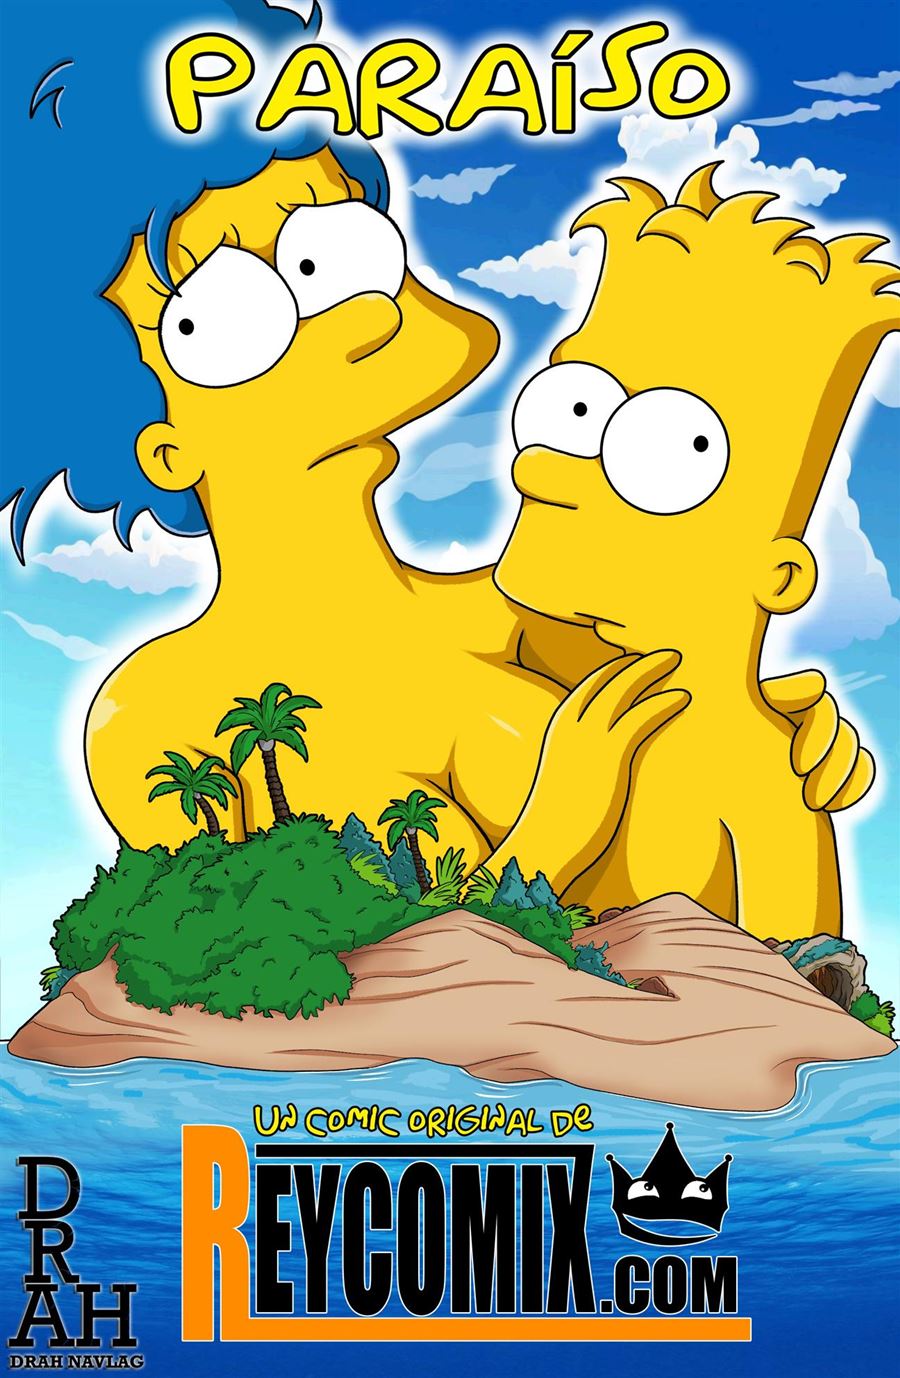 O paraíso perdido dos Simpsons